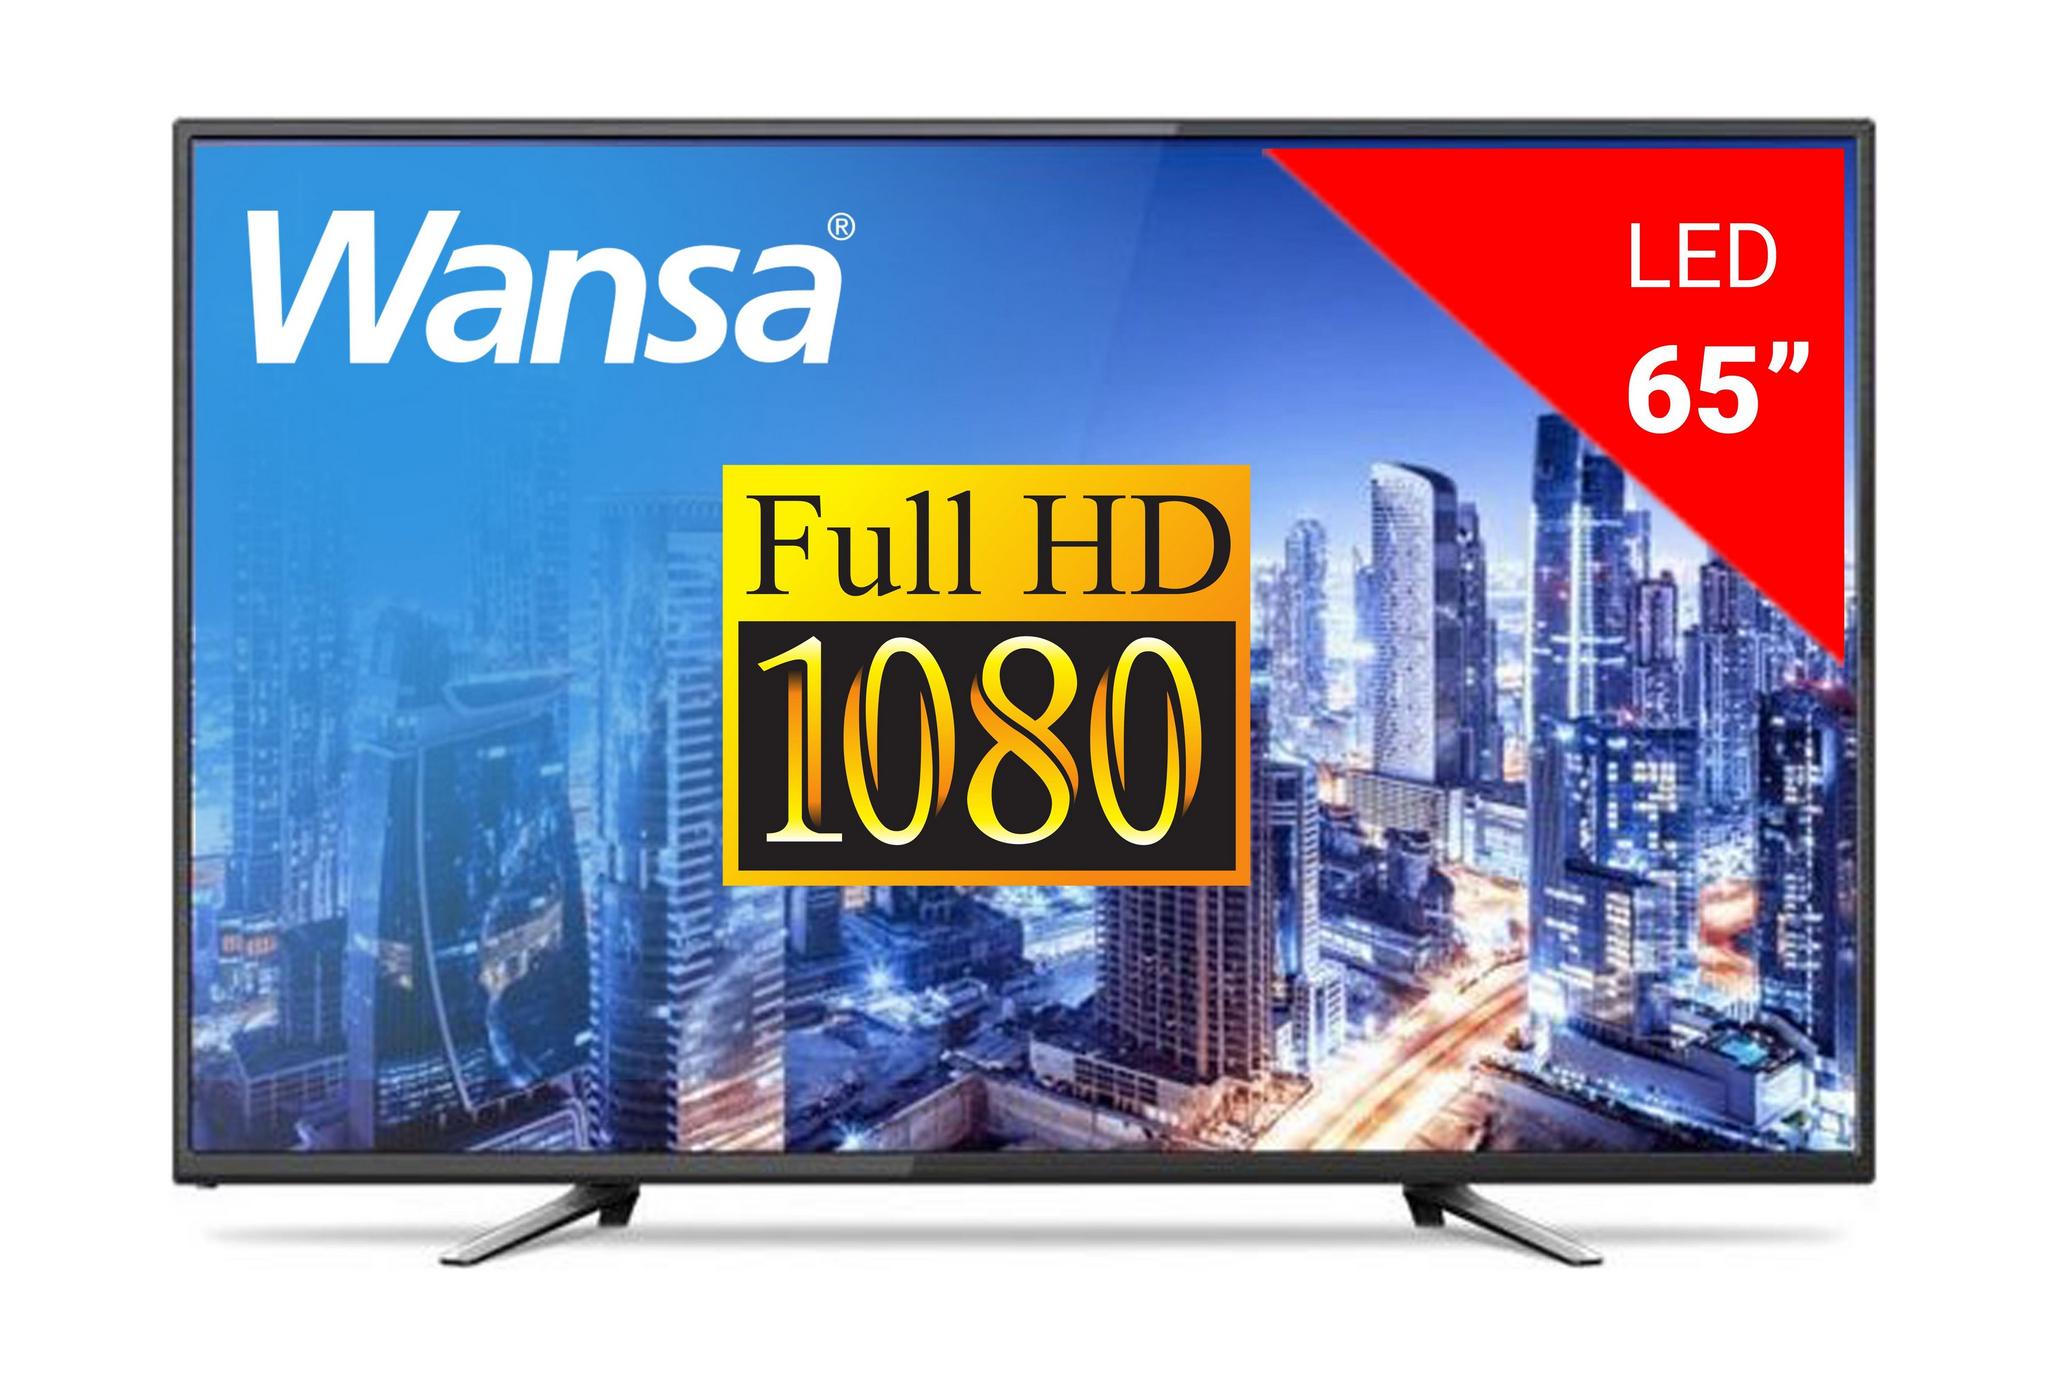 WANSA 65 inch Full HD LED TV - WLE65F8862